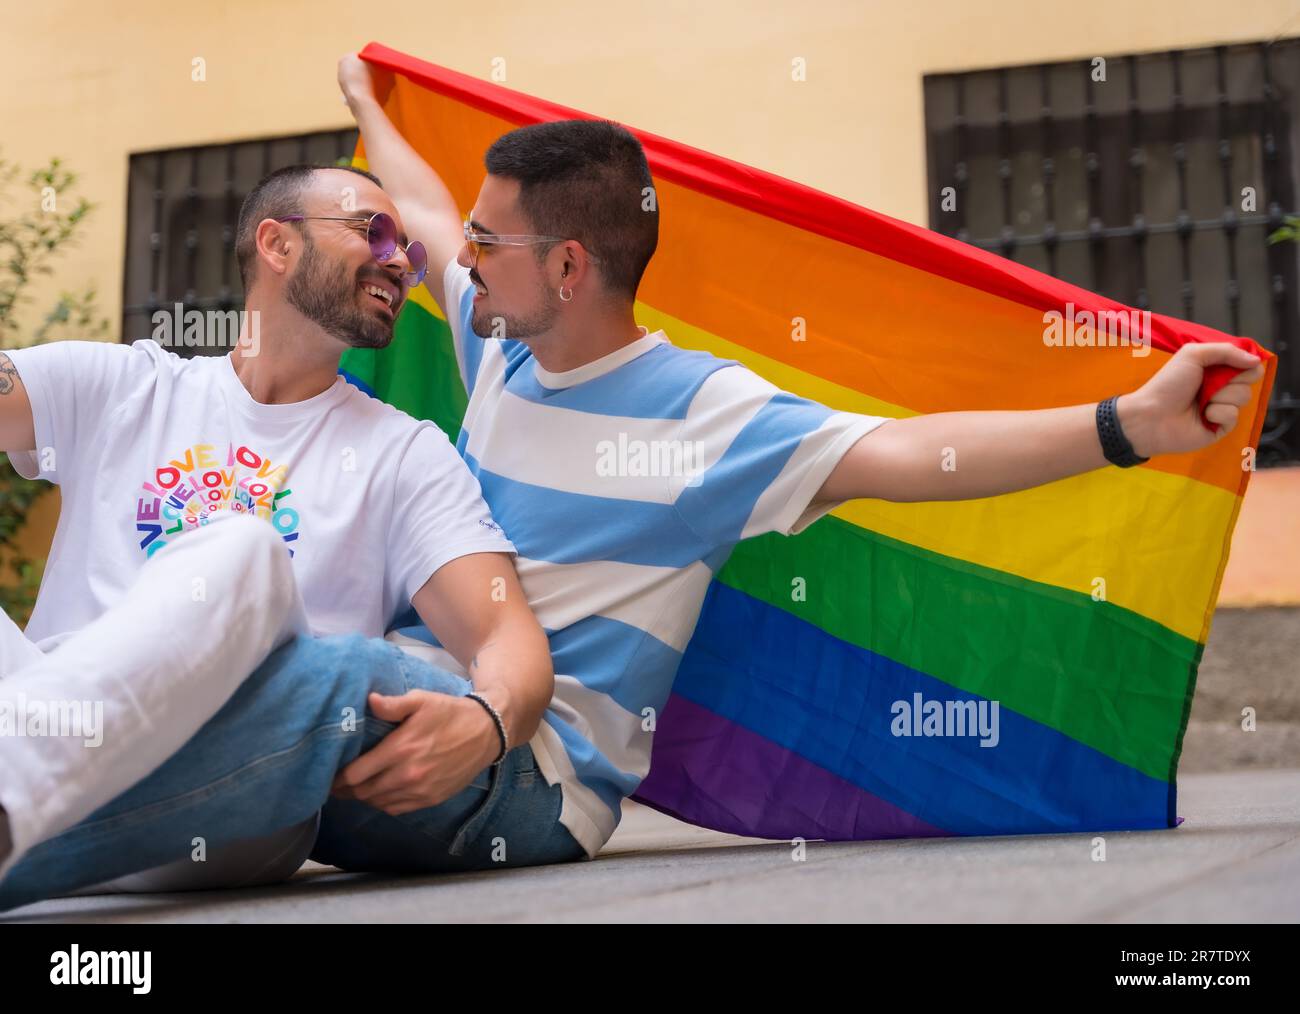 Porträt eines schwulen männlichen Paares, das auf dem Boden sitzt, mit Regenbogenflagge auf der Pride Party, lgbt Concept Stockfoto